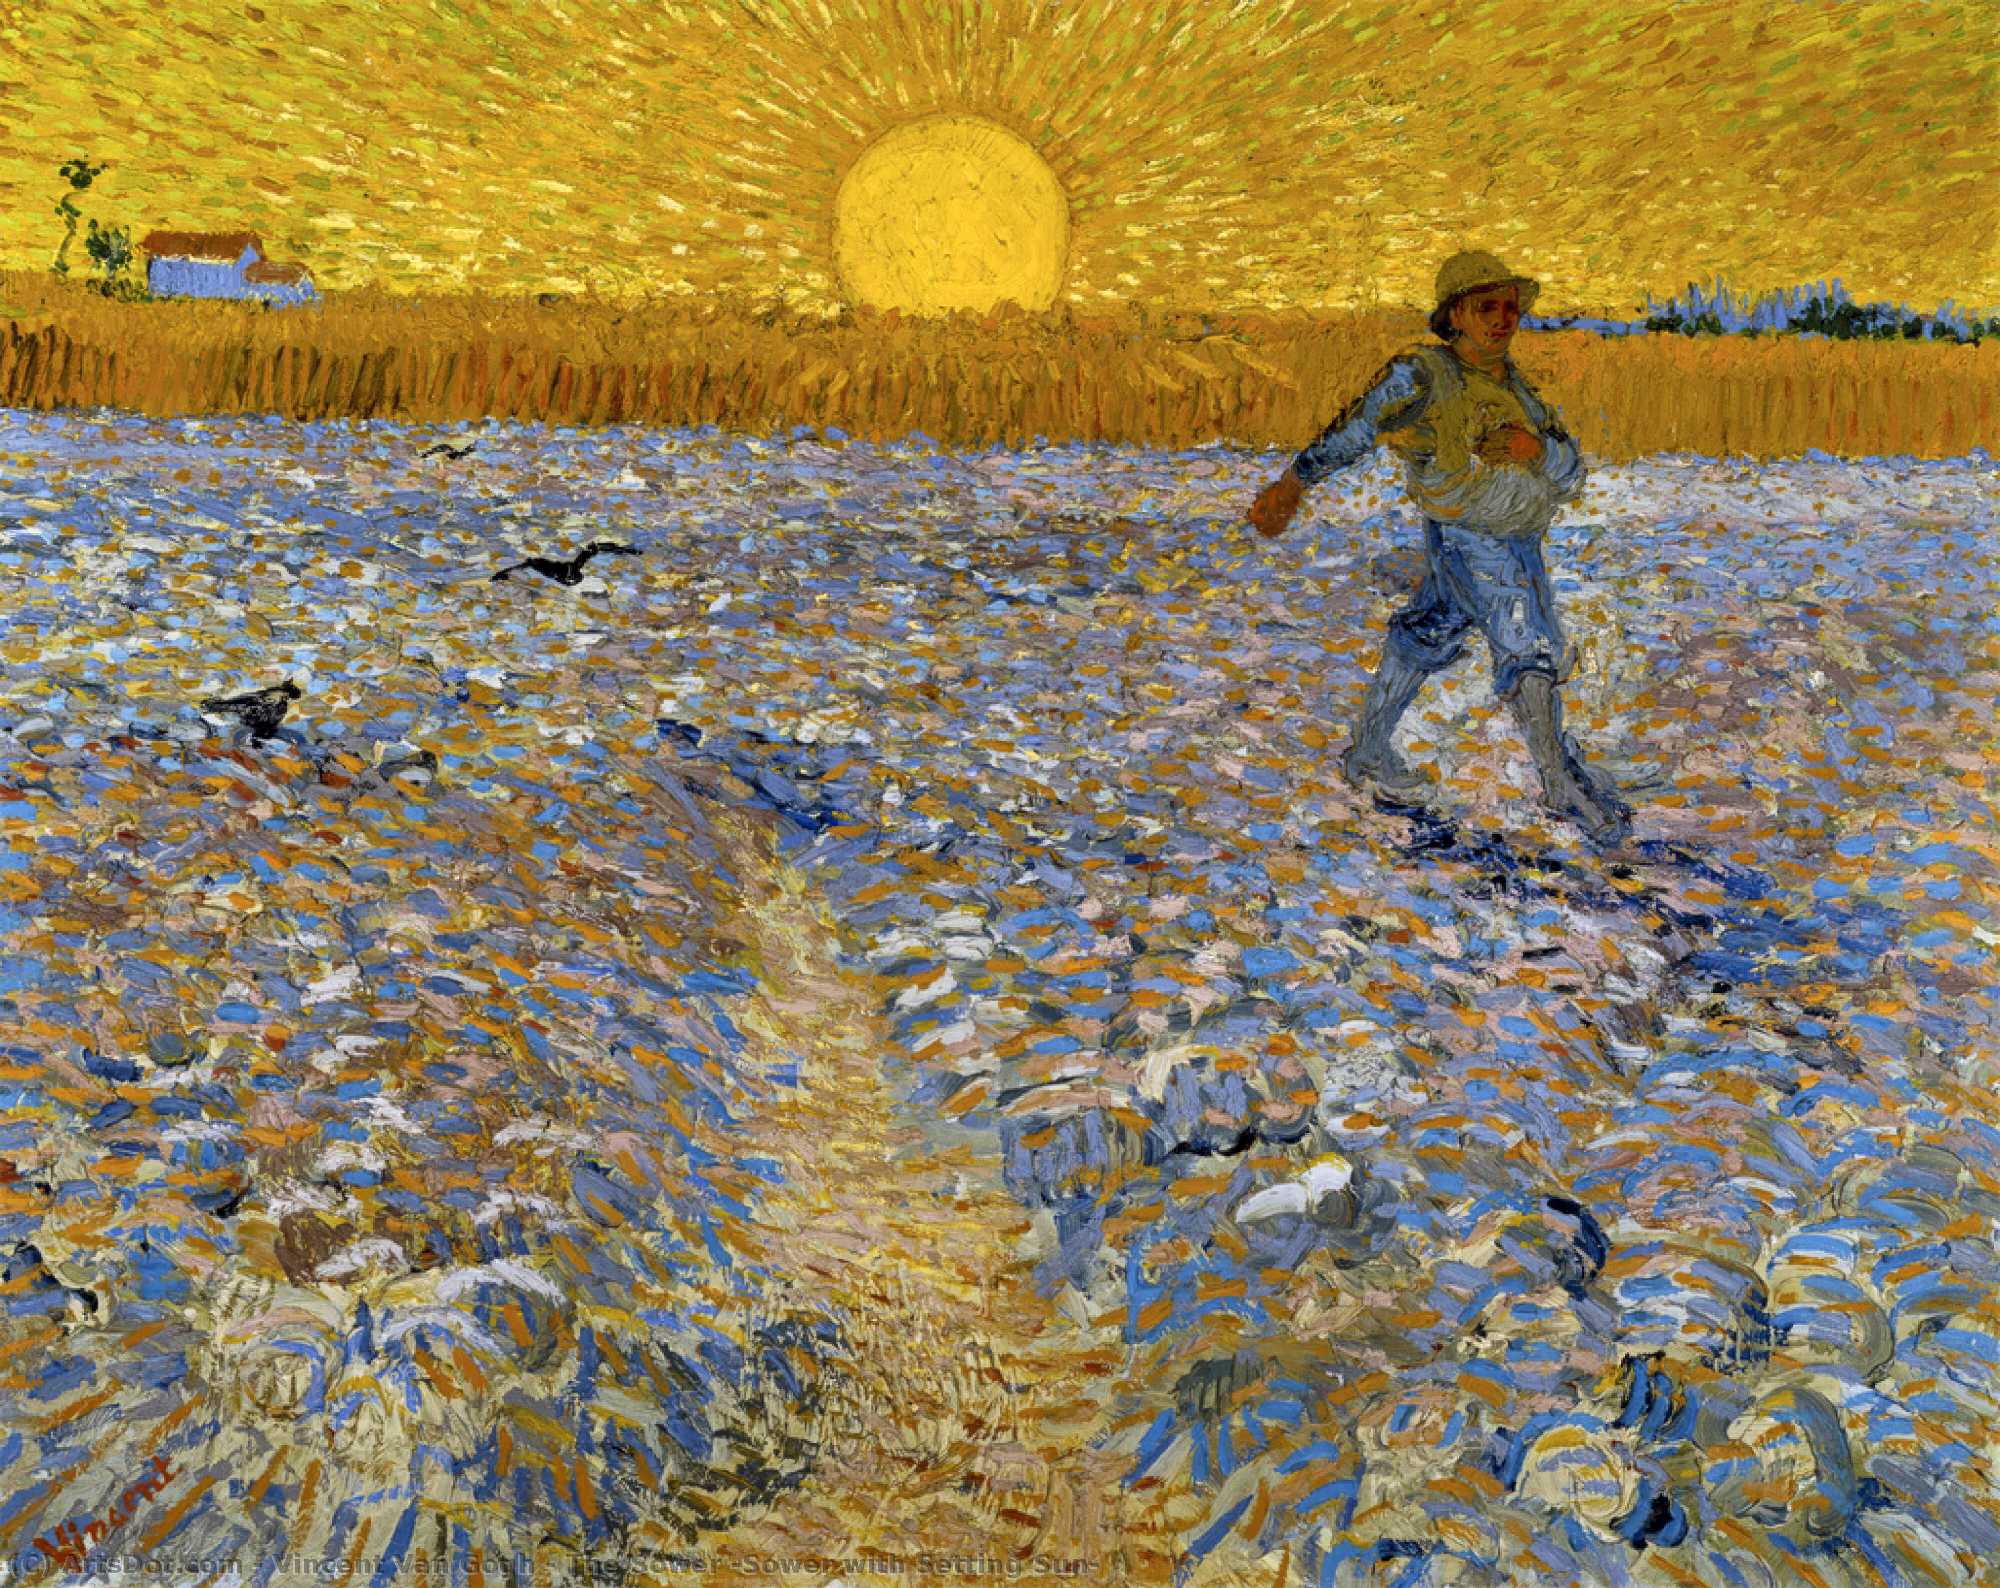 Achat Reproductions De Qualité Musée Le Semeur (tour avec coucher du soleil), 1888 de Vincent Van Gogh (1853-1890, Netherlands) | ArtsDot.com